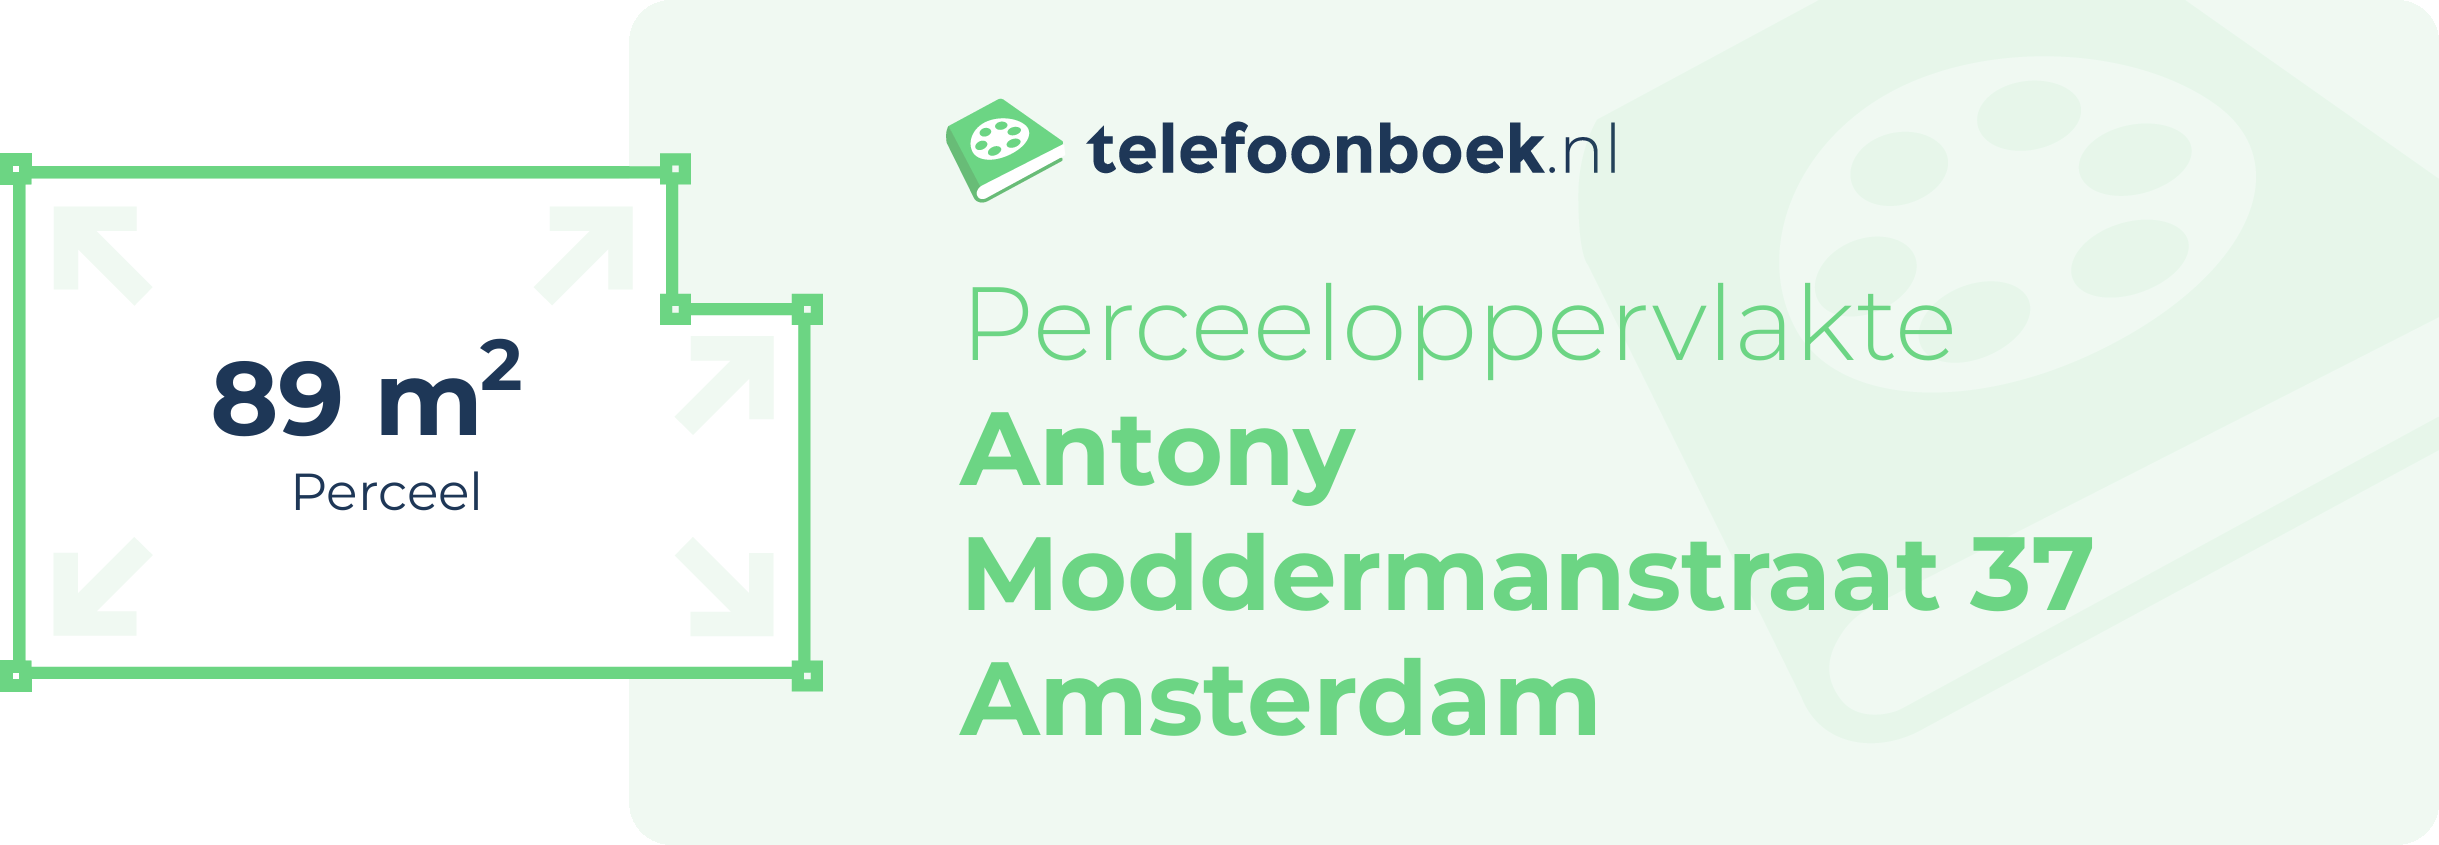 Perceeloppervlakte Antony Moddermanstraat 37 Amsterdam